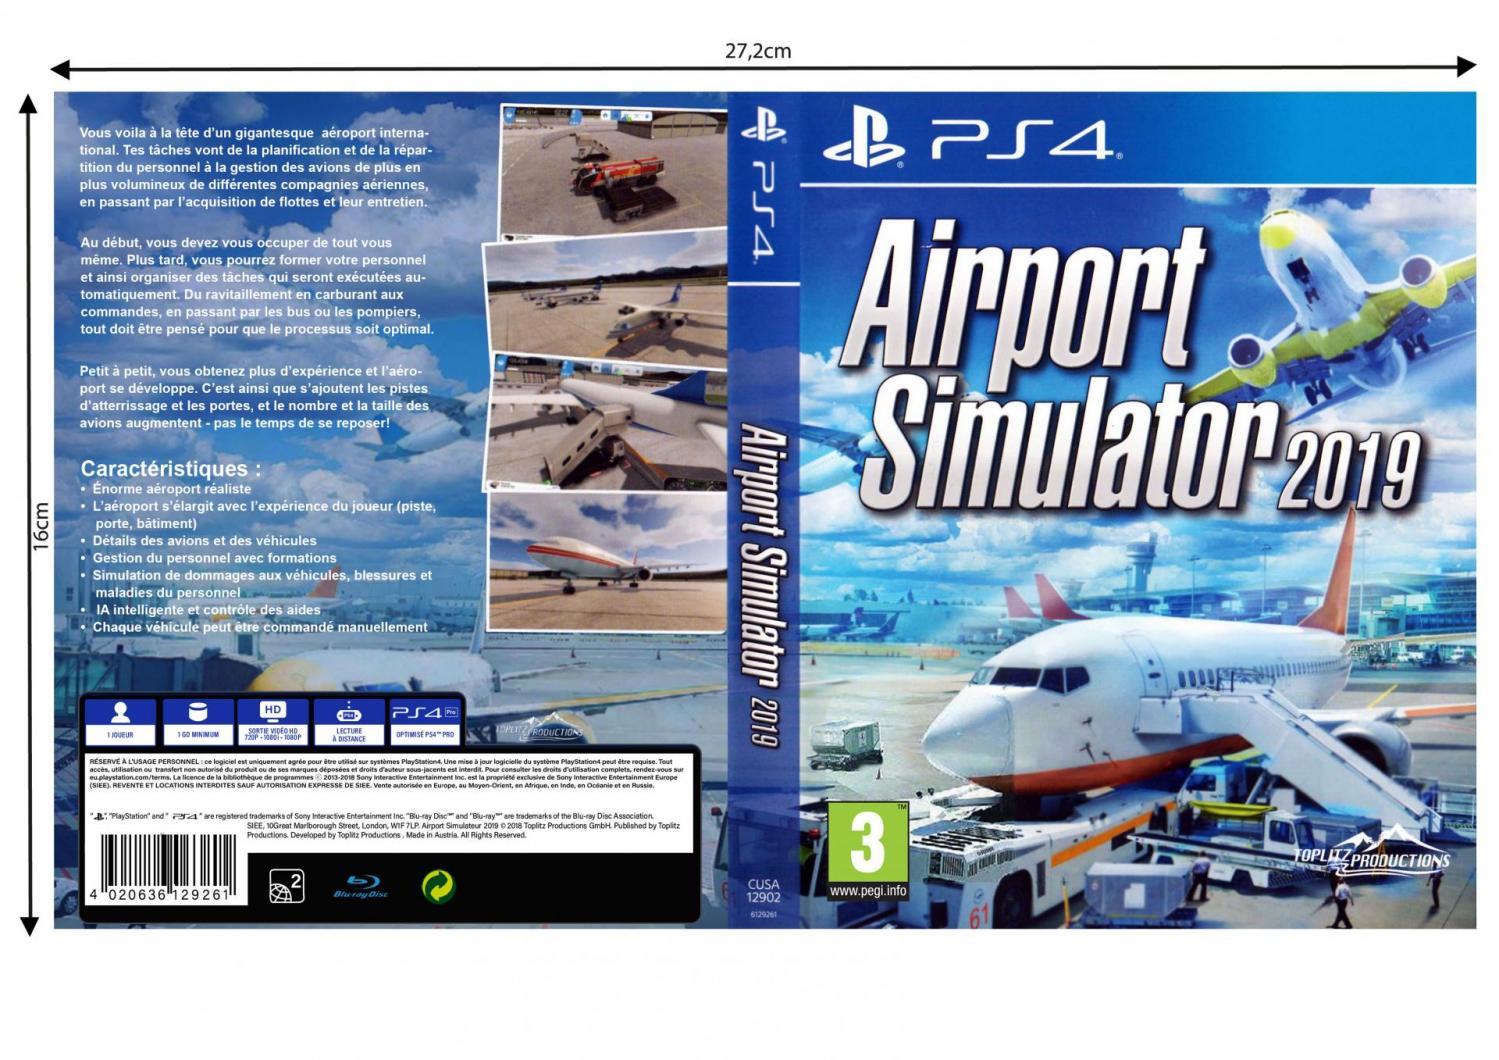 Airport simulateur 2019